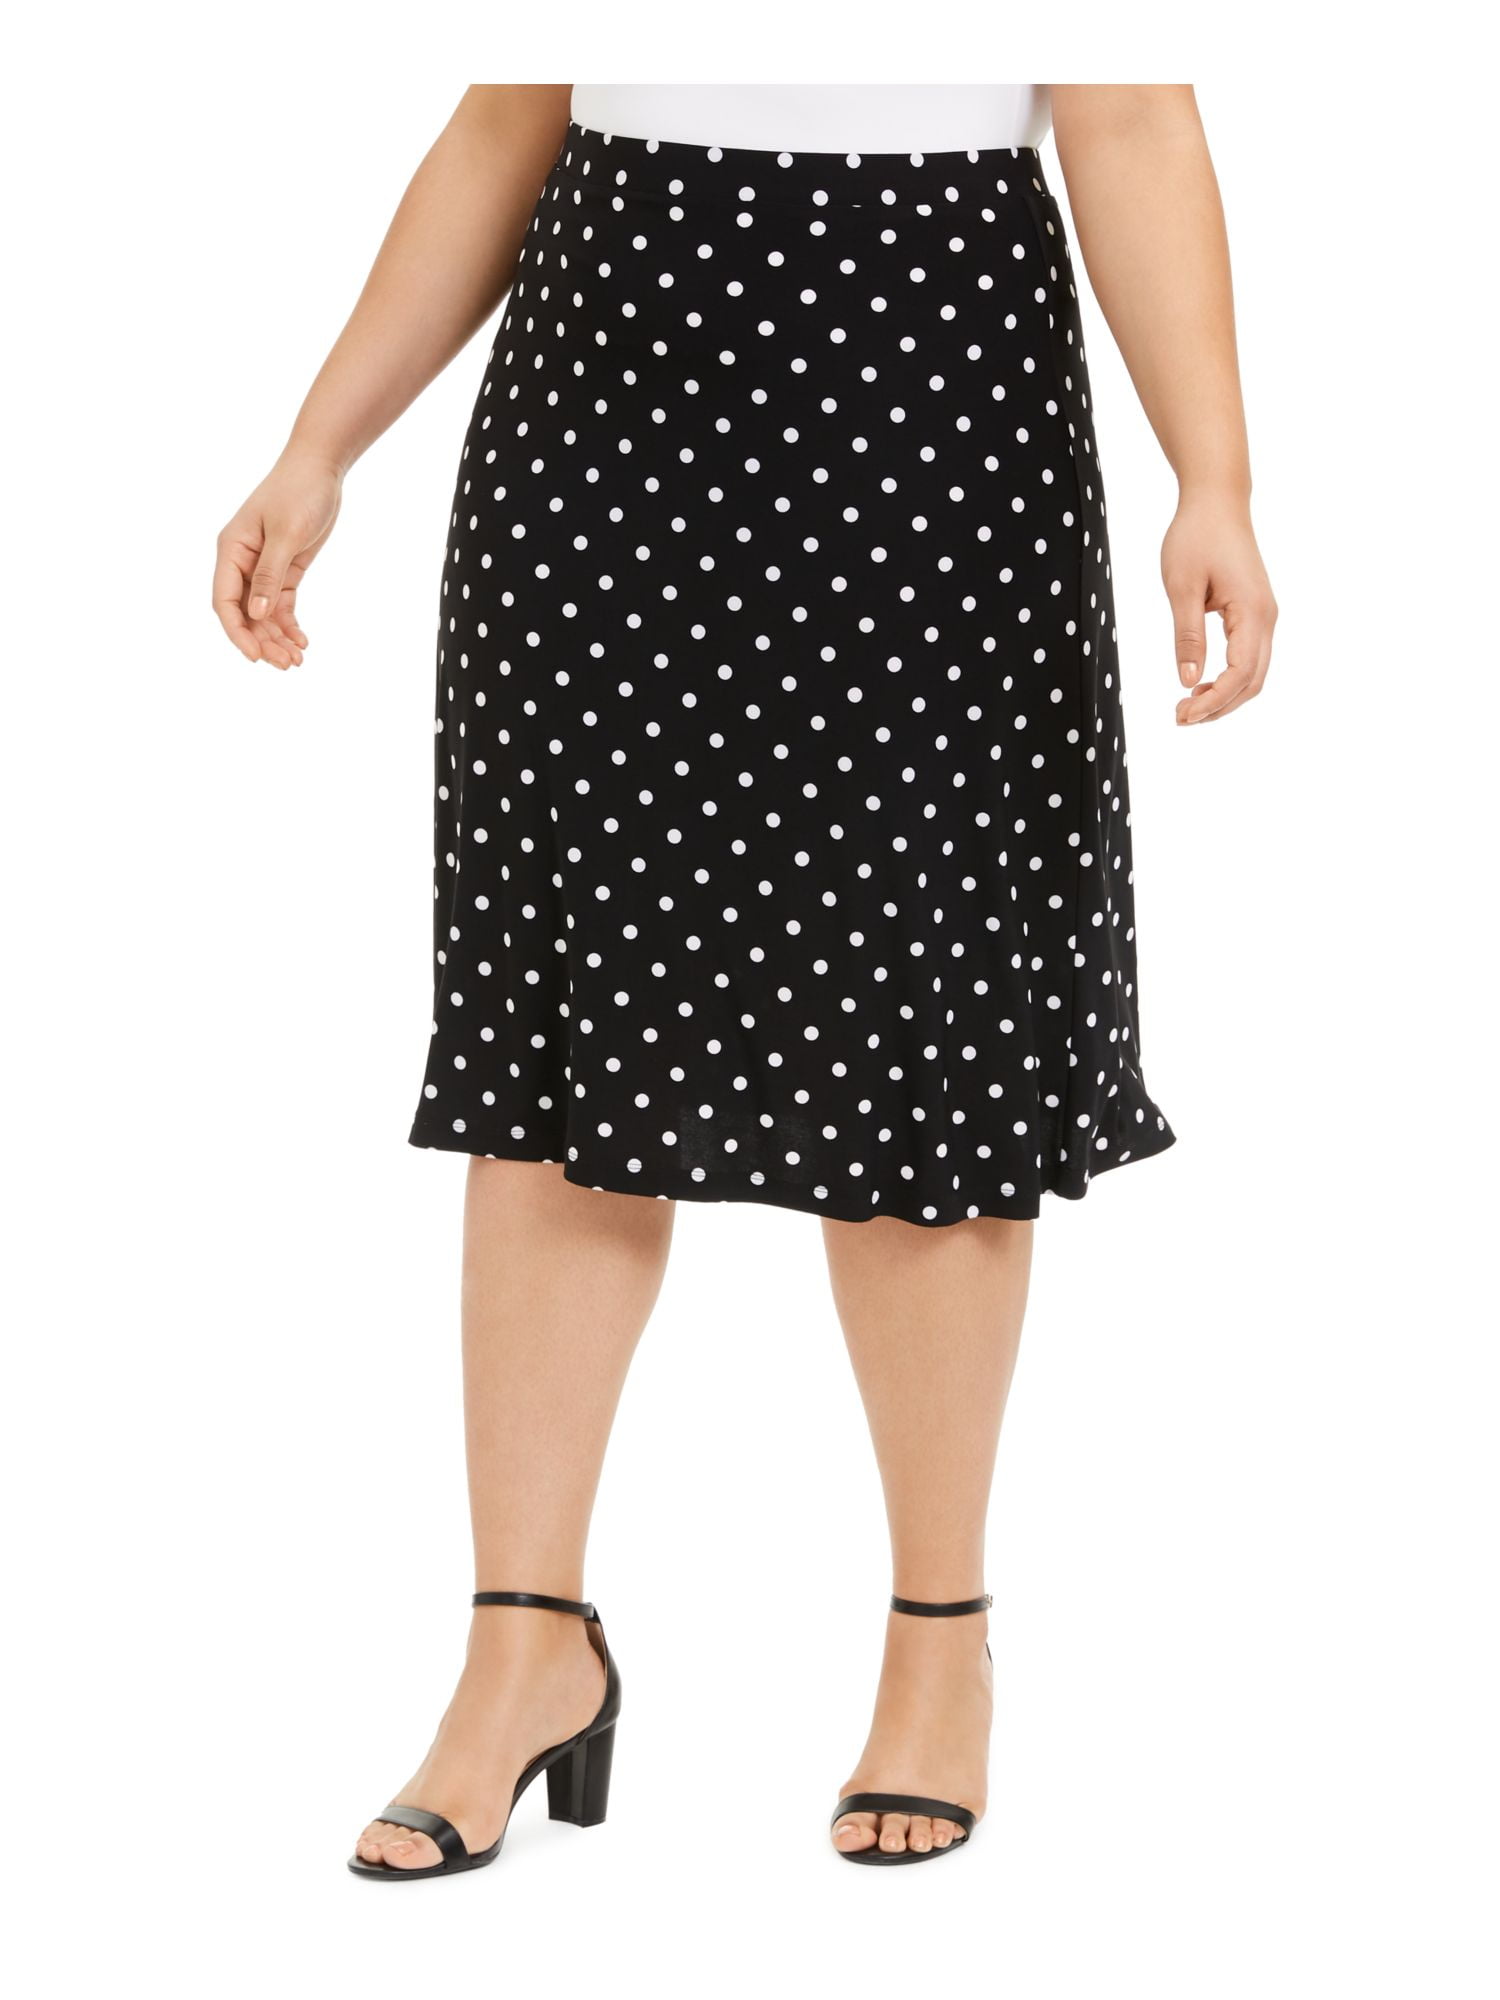 KASPER Womens Black Polka Dot Below The Knee A-Line Skirt Plus Size: 2X -  Walmart.com